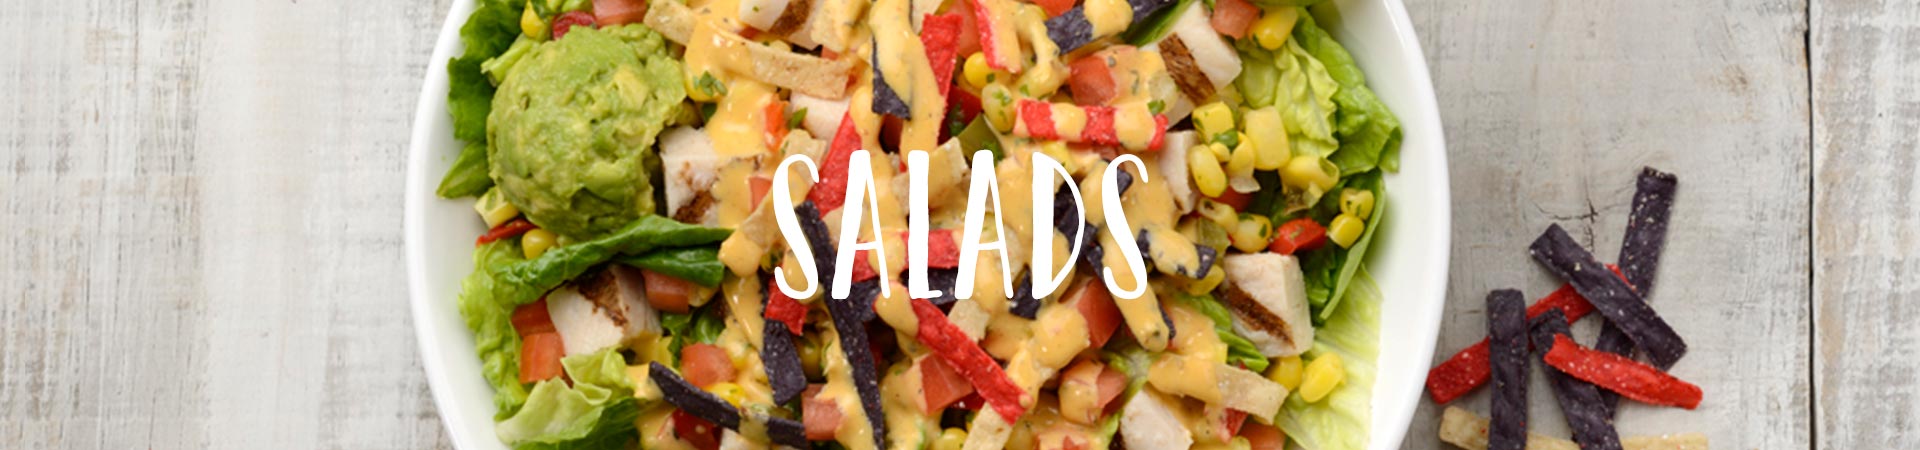 Salads Header